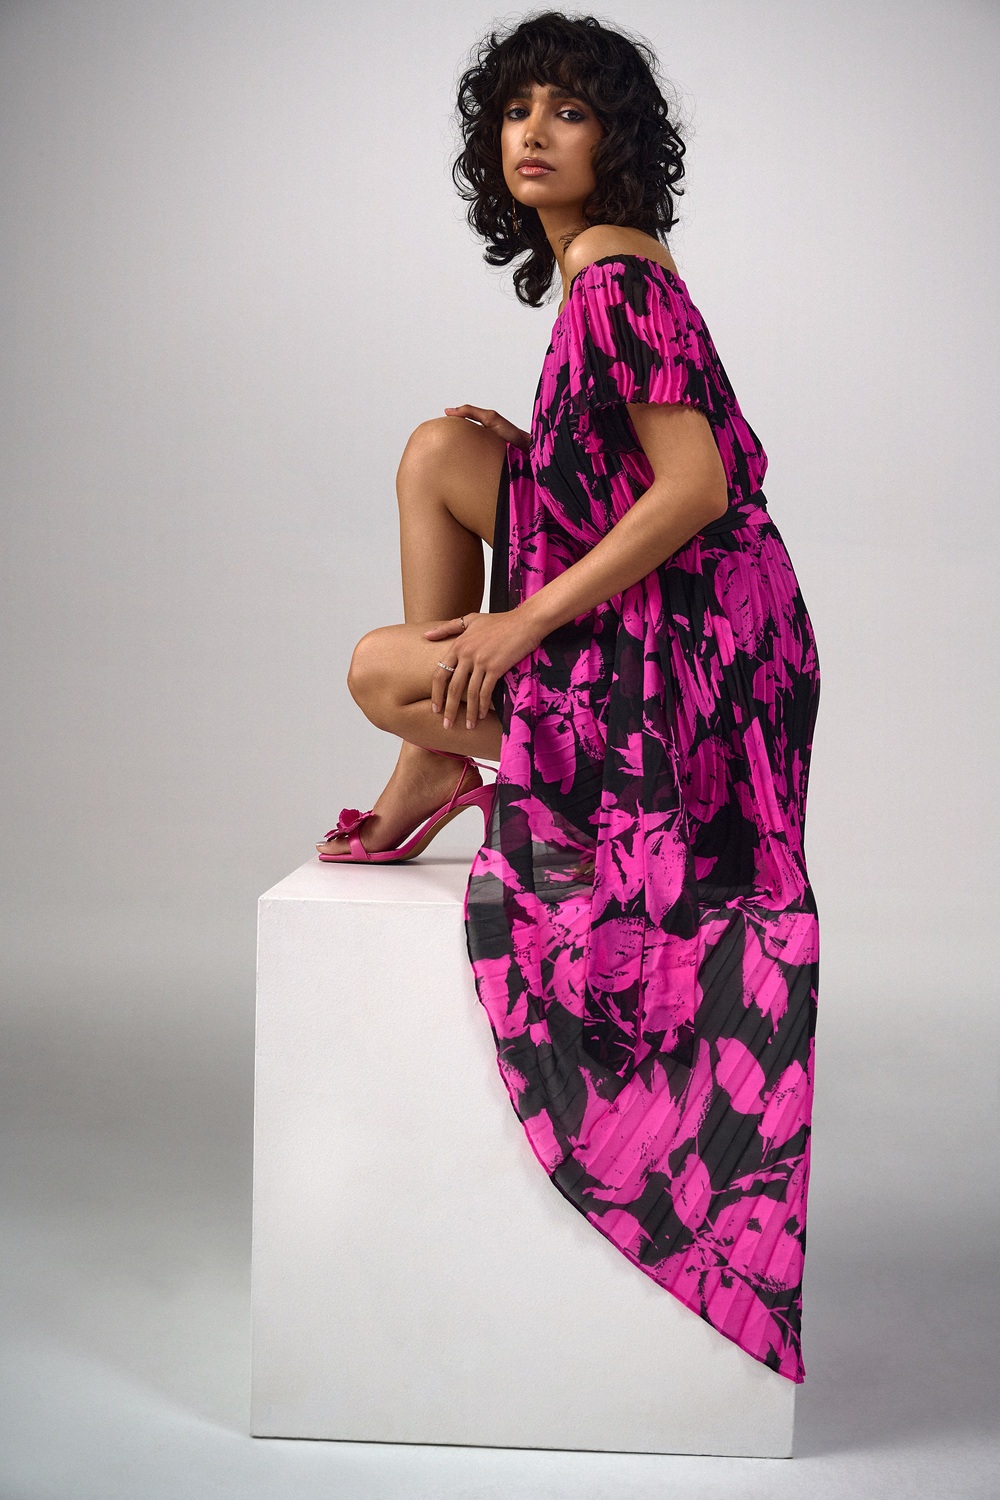 Robe plissée, dessins fleuris modèle 241908. Noir/rose